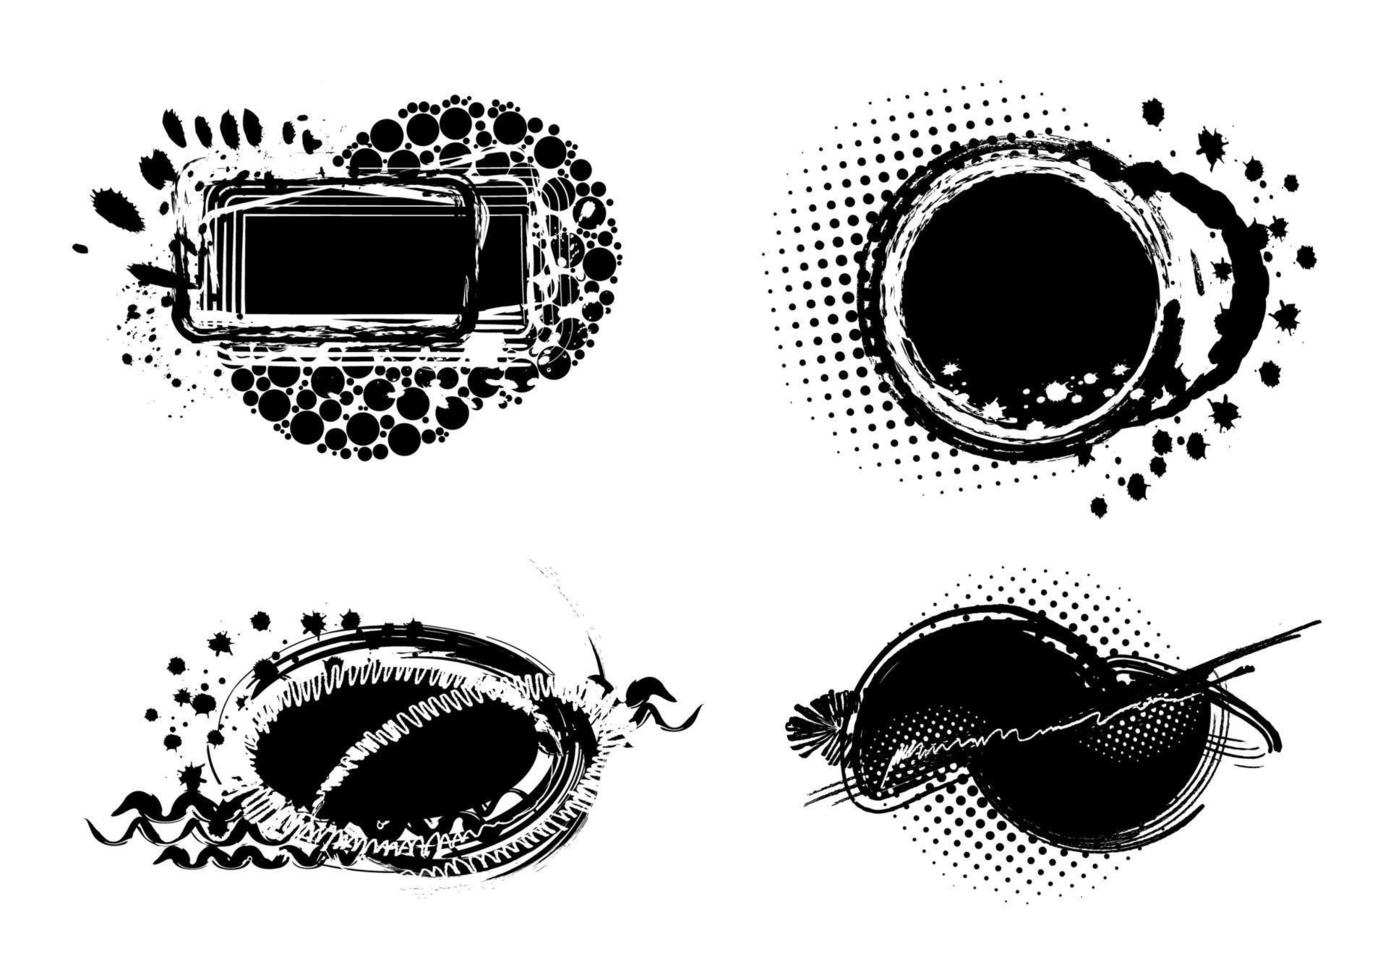 conjunto de elementos grunge manchas de pintura fondo negro, elemento de diseño grunge, trazos de pincel, tinta blanca y negra, marco para texto. ilustración vectorial vector